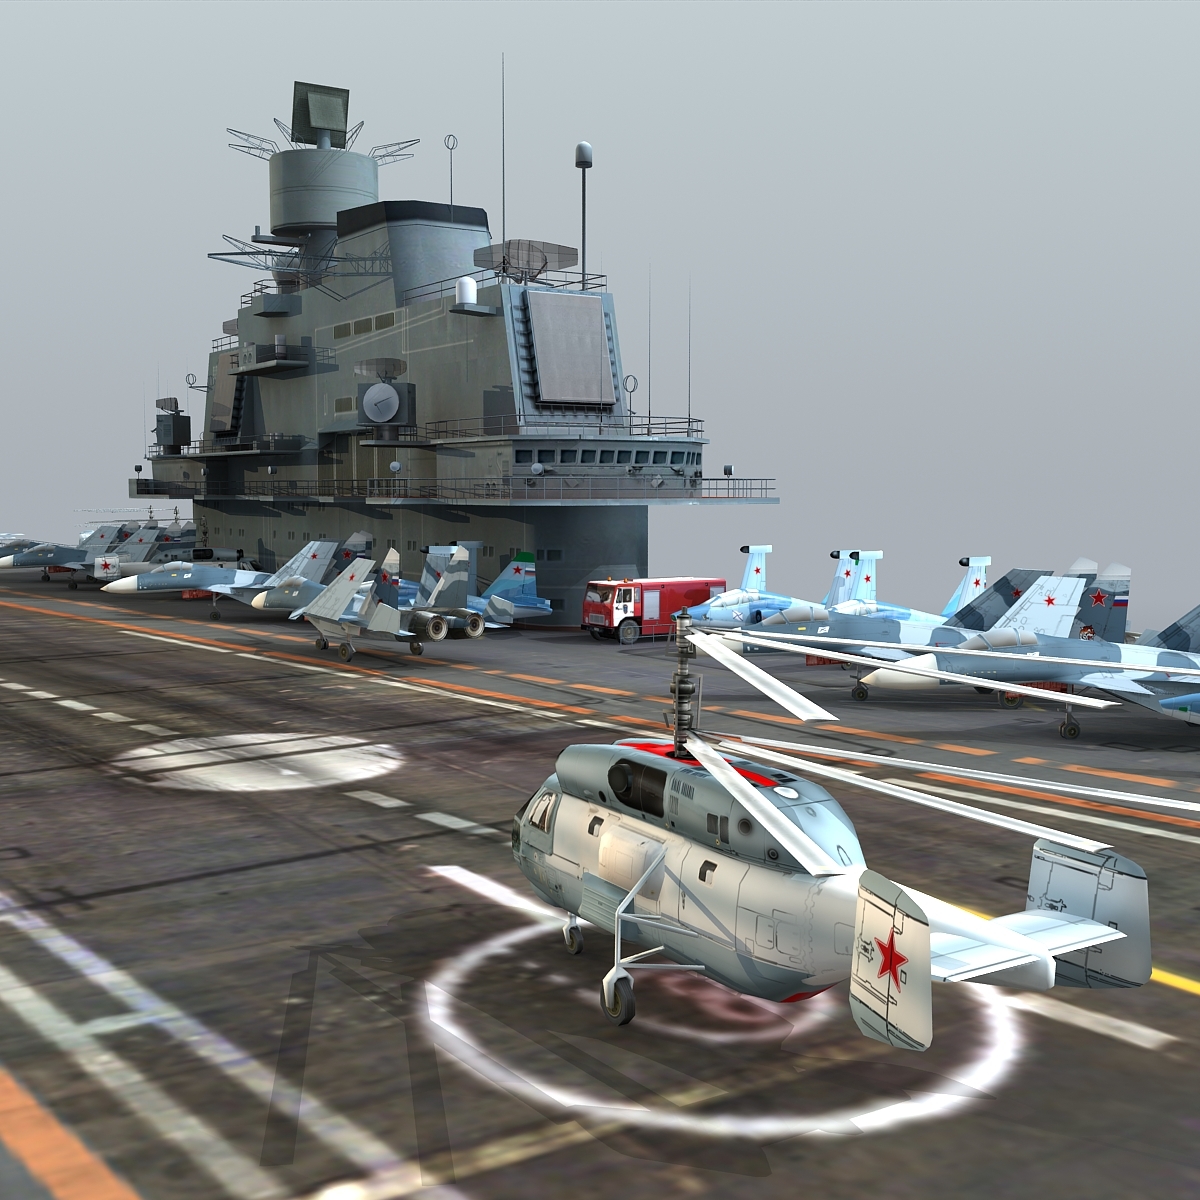 3d admiral kuznetsov aircraft carrier model